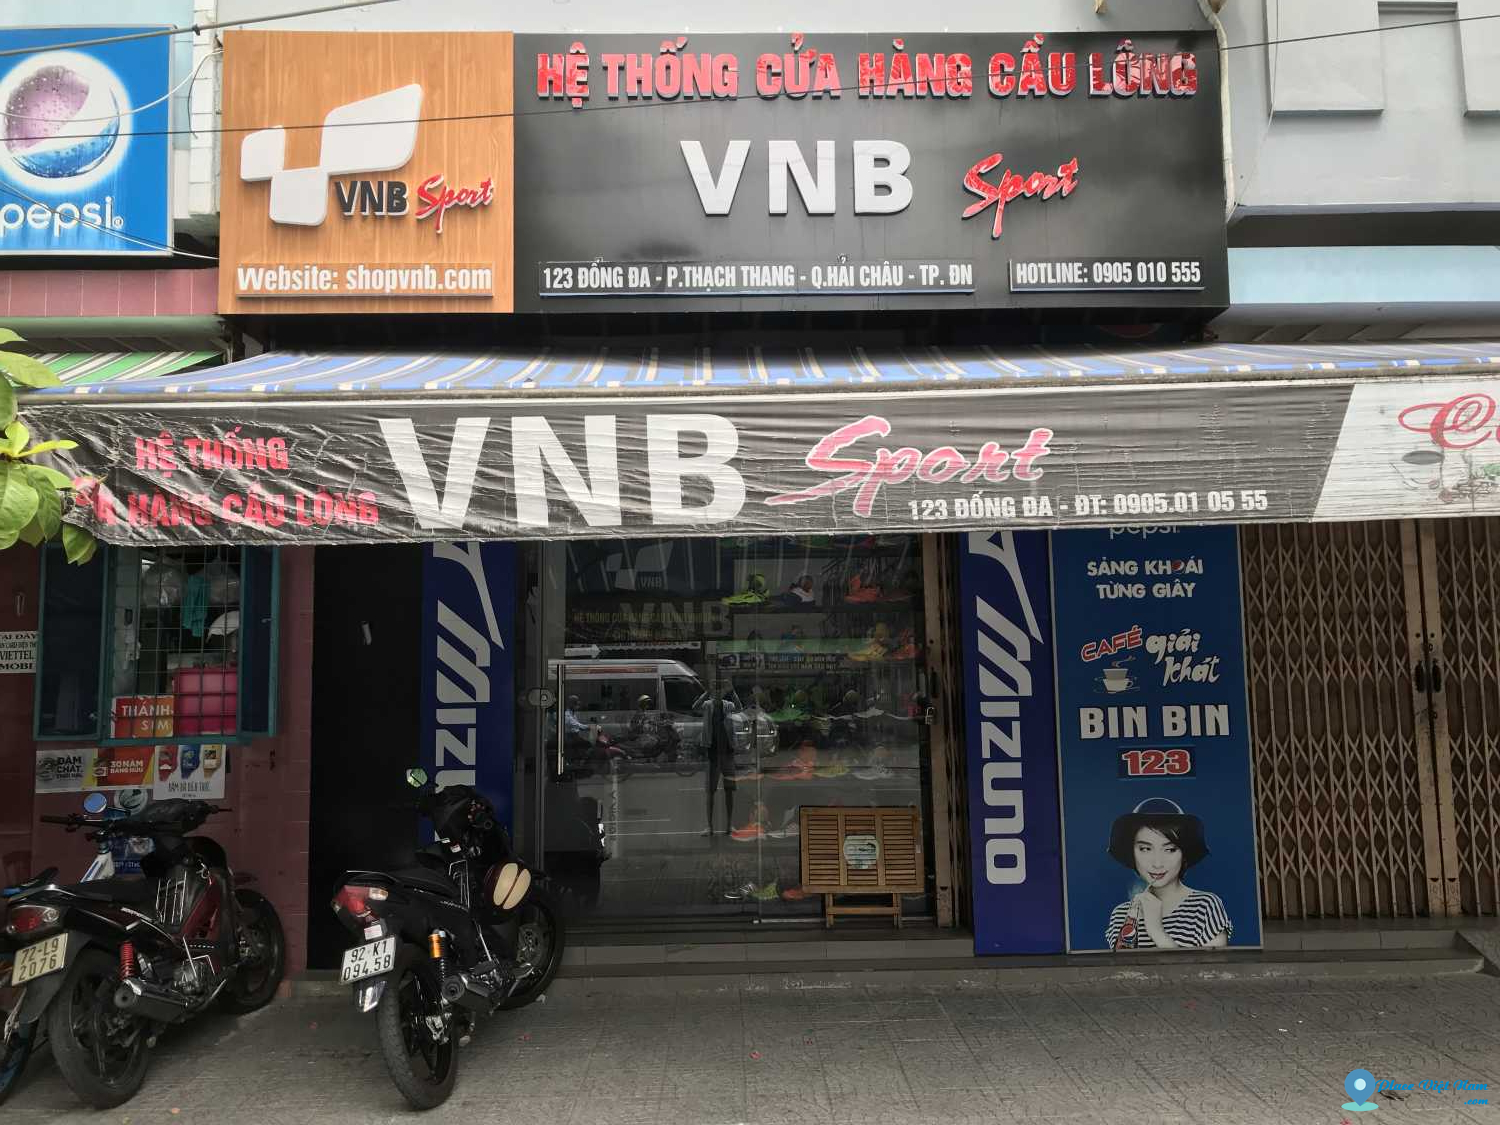 Shop cầu lông Đà Nẵng - VNB Sports